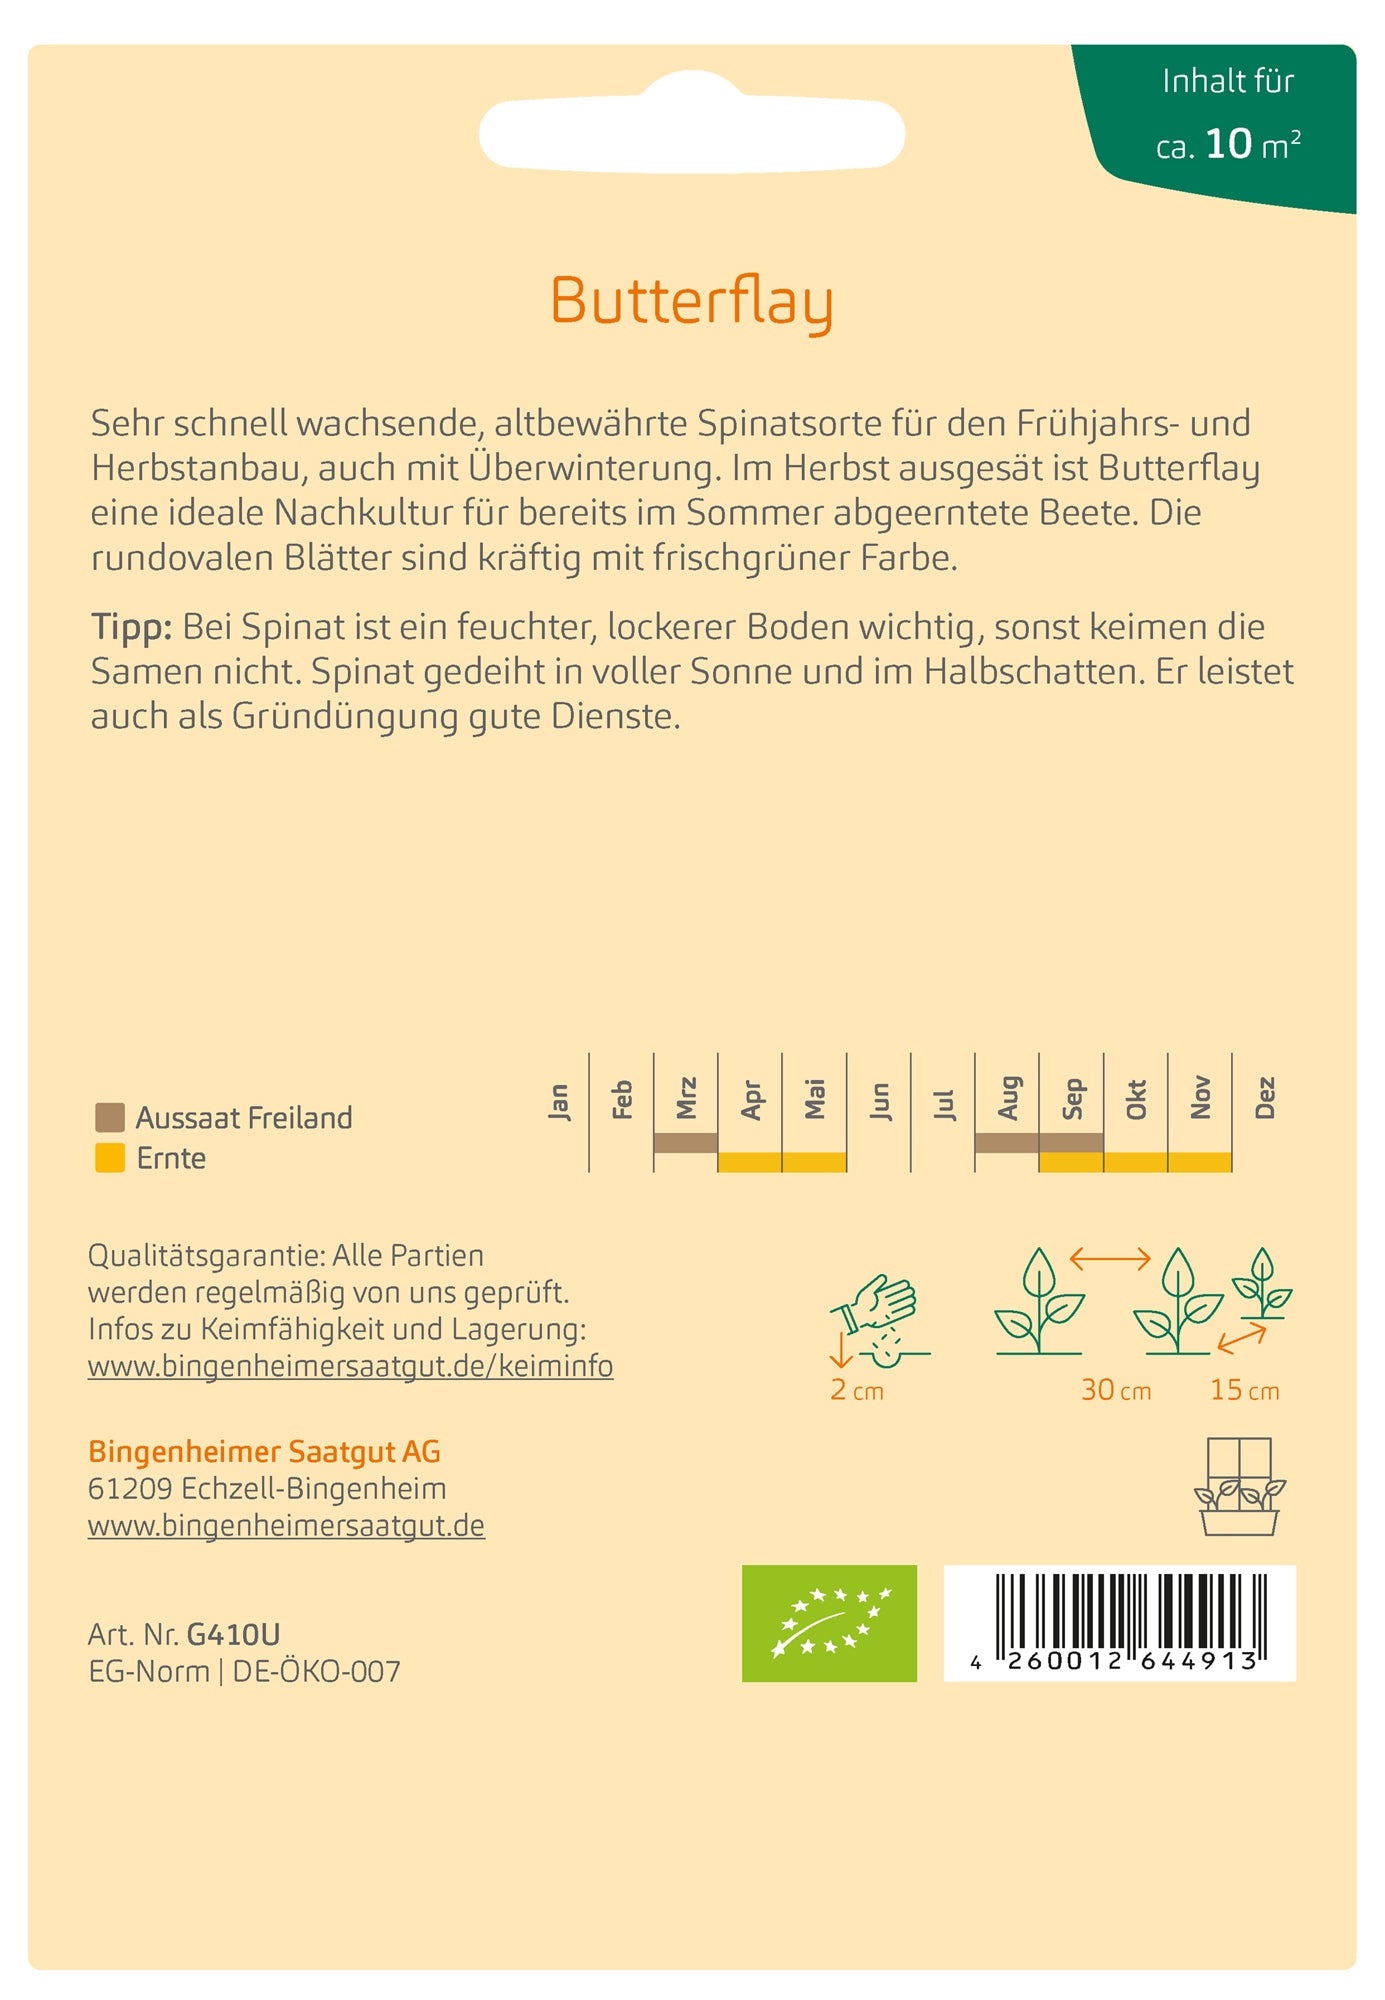 Spinat Butterflay | BIO Spinatsamen von Bingenheimer Saatgut